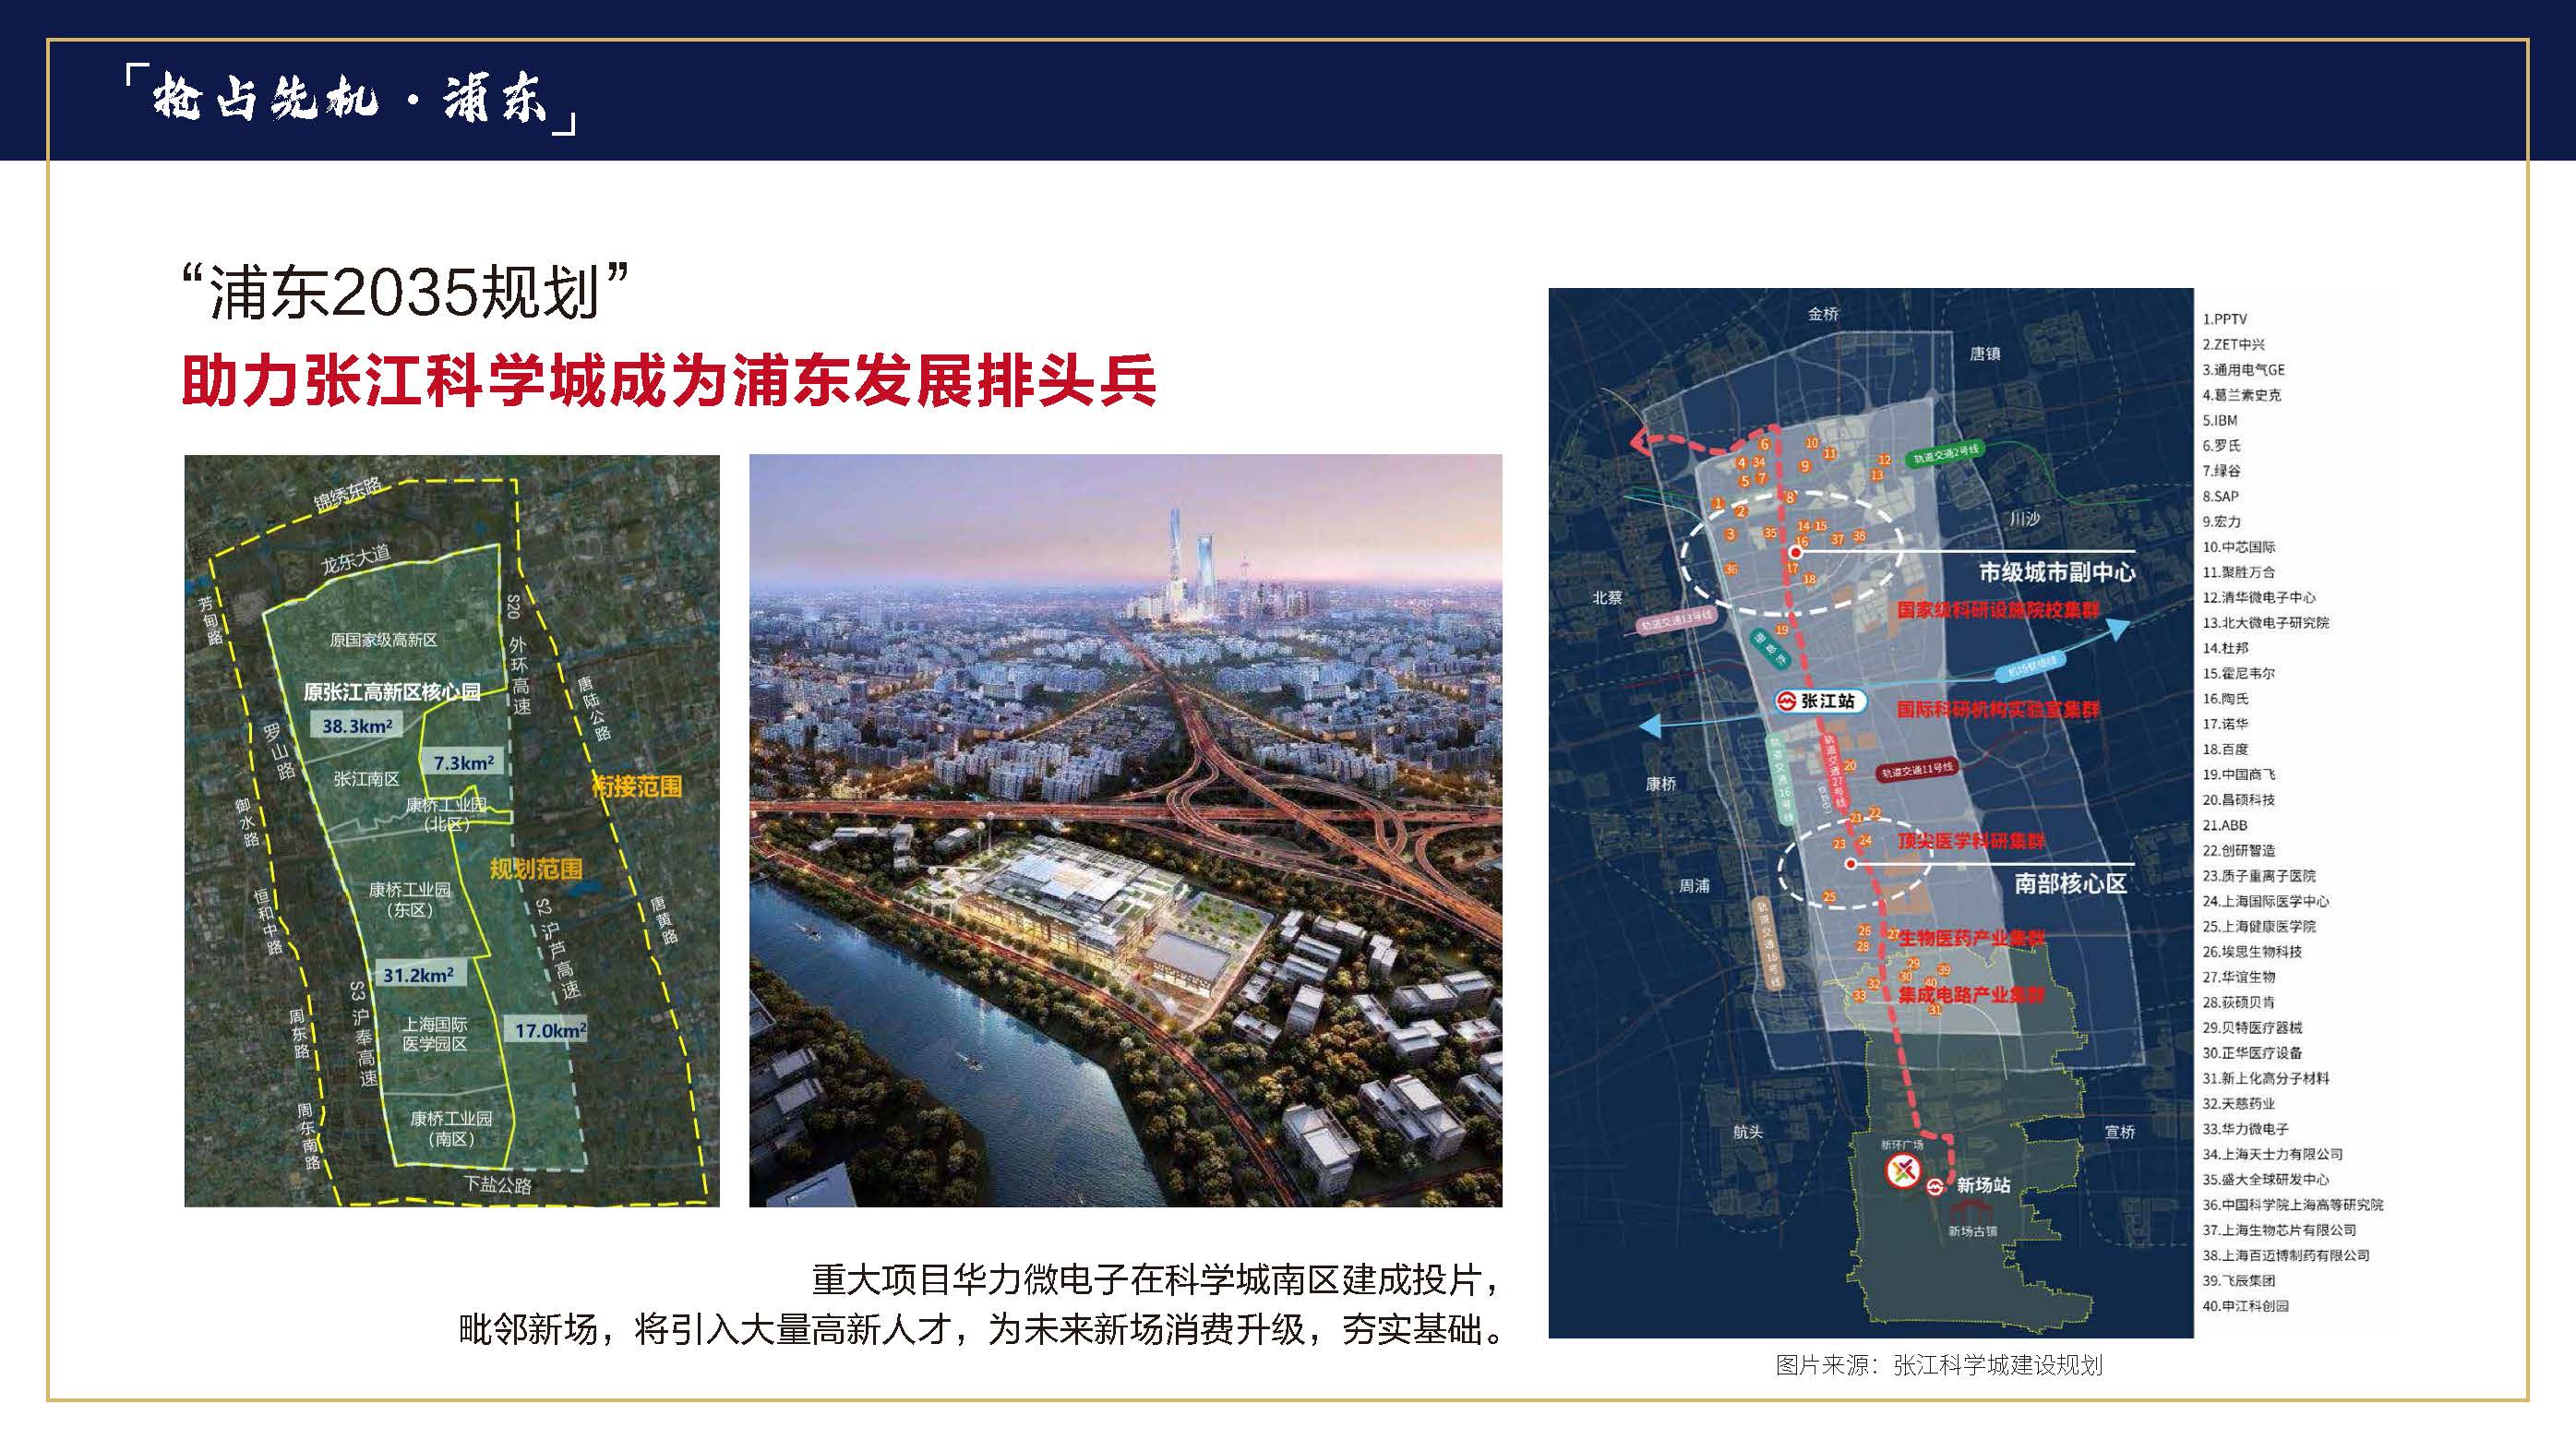 上海新环广场价值分析以及内部折扣曝光